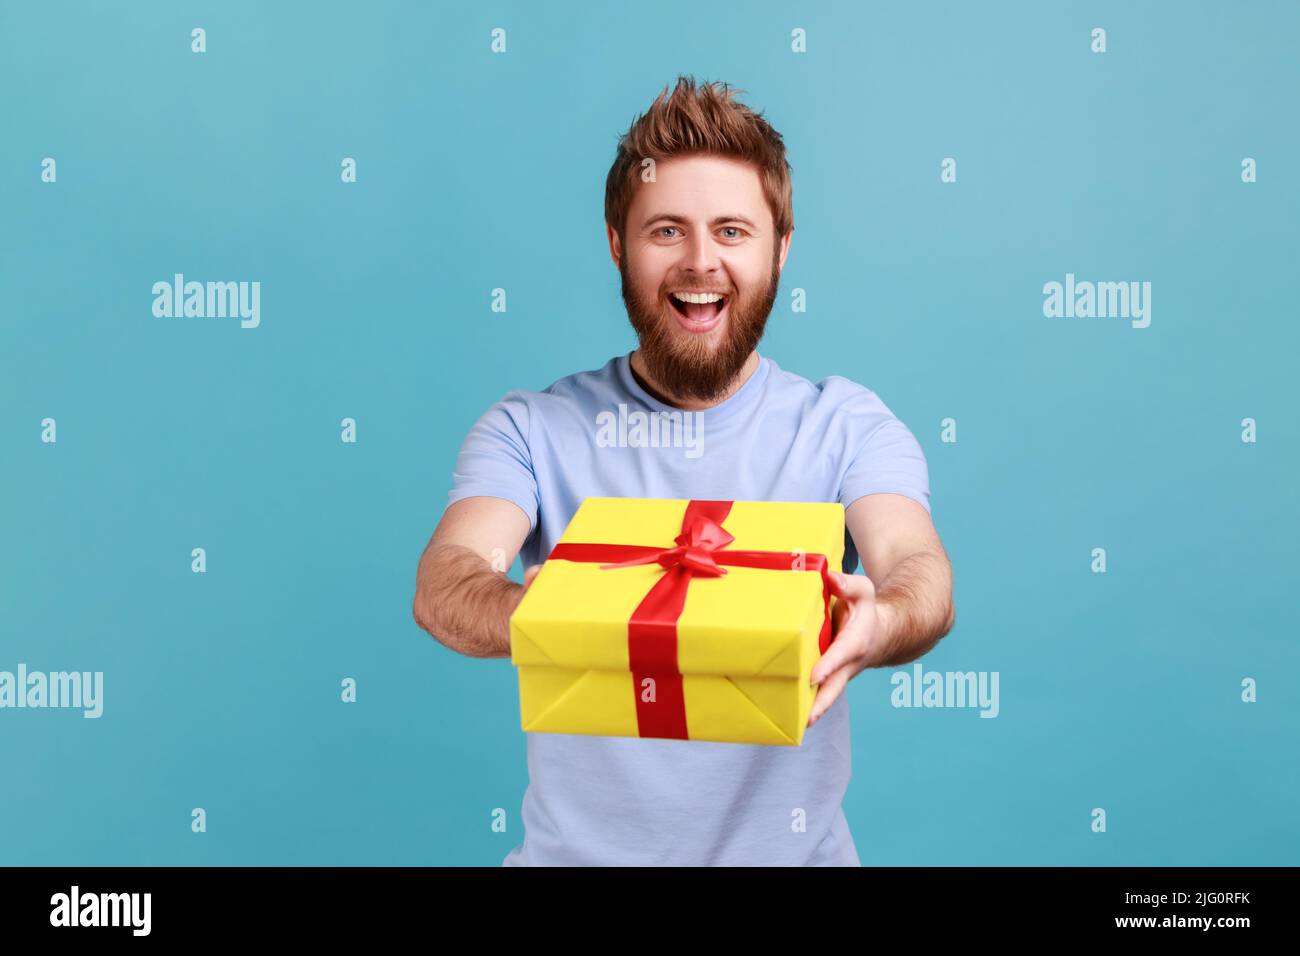 Porträt eines positiven bärtigen Mannes, der gelbe Geschenkbox mit rotem Band an die Kamera gibt und lächelt, das Weihnachtsgeschenk teilt und gratuliert. Innenaufnahme des Studios isoliert auf blauem Hintergrund. Stockfoto